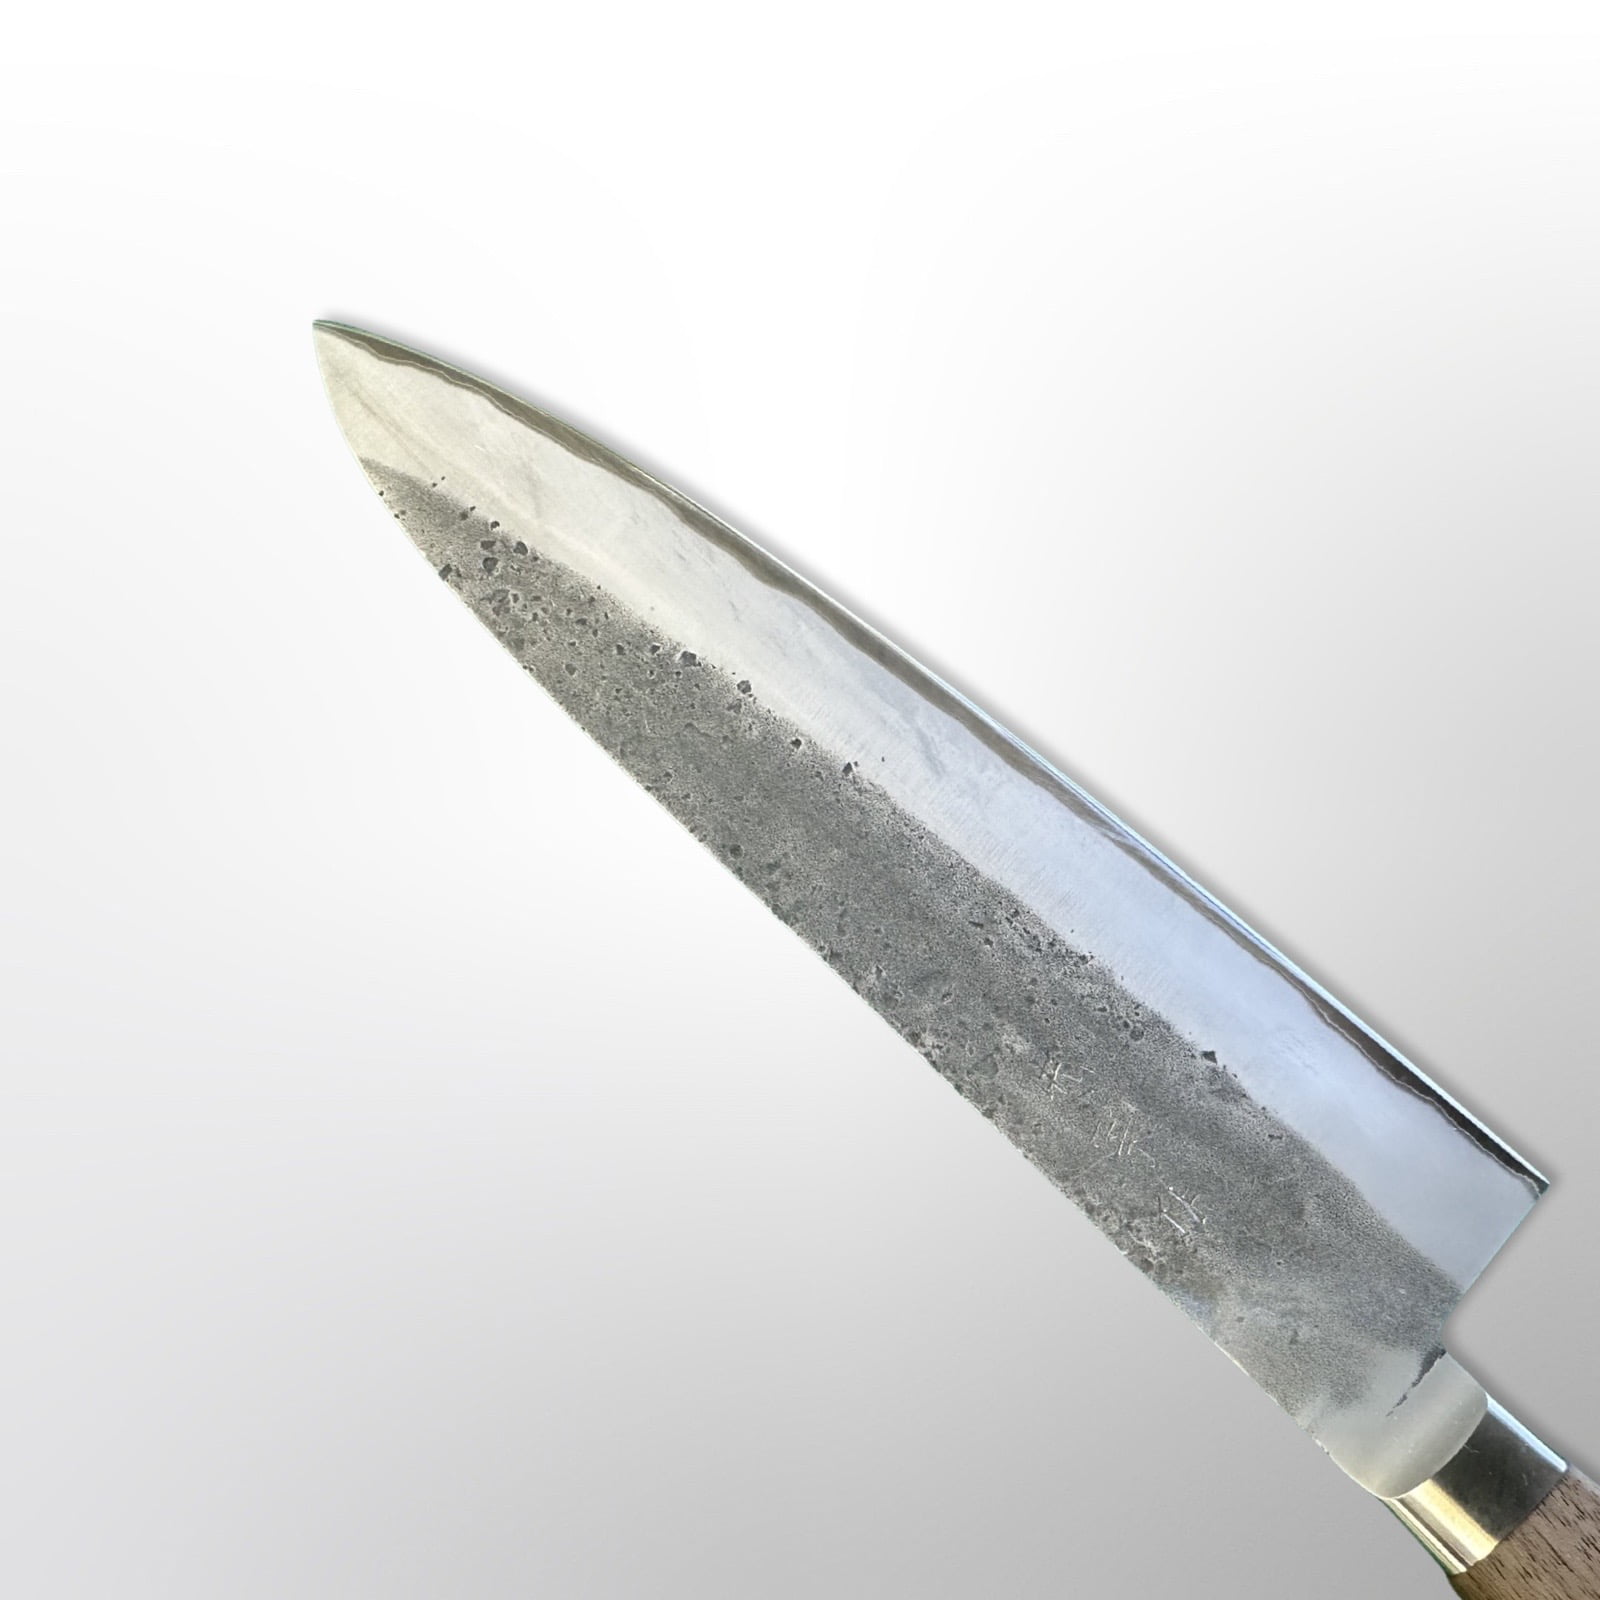  סכין שף רב-תכליתית גיוטו 240מ״מ מחוזקת 3 שכבות: פלדת פחמן יפנית אוגמי2 עטופה פלדת אל-חלד גימור נשיג׳י טדאפוסה יפן